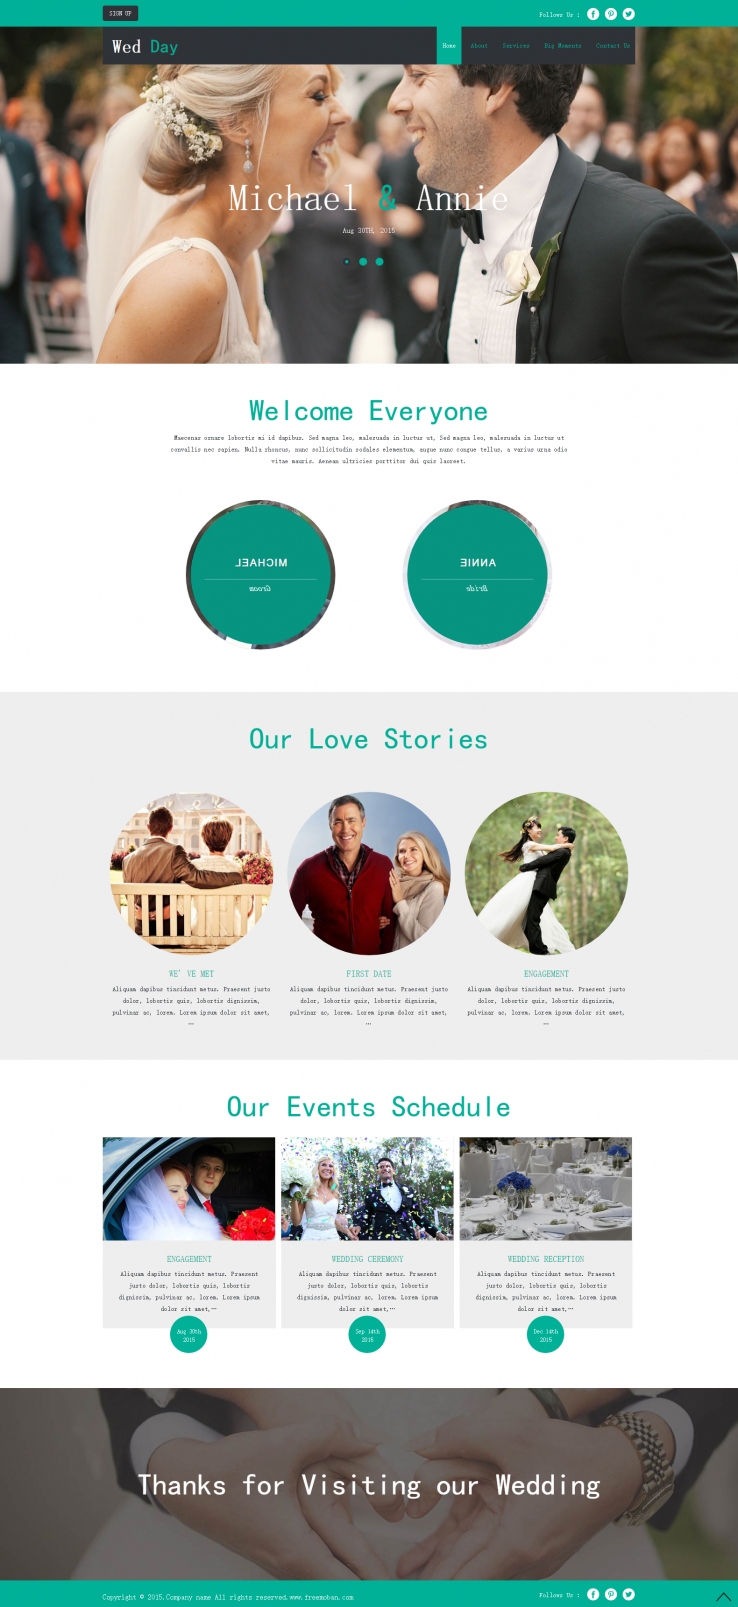 绿色简洁风格的婚礼相册纪恋日整站网站模板